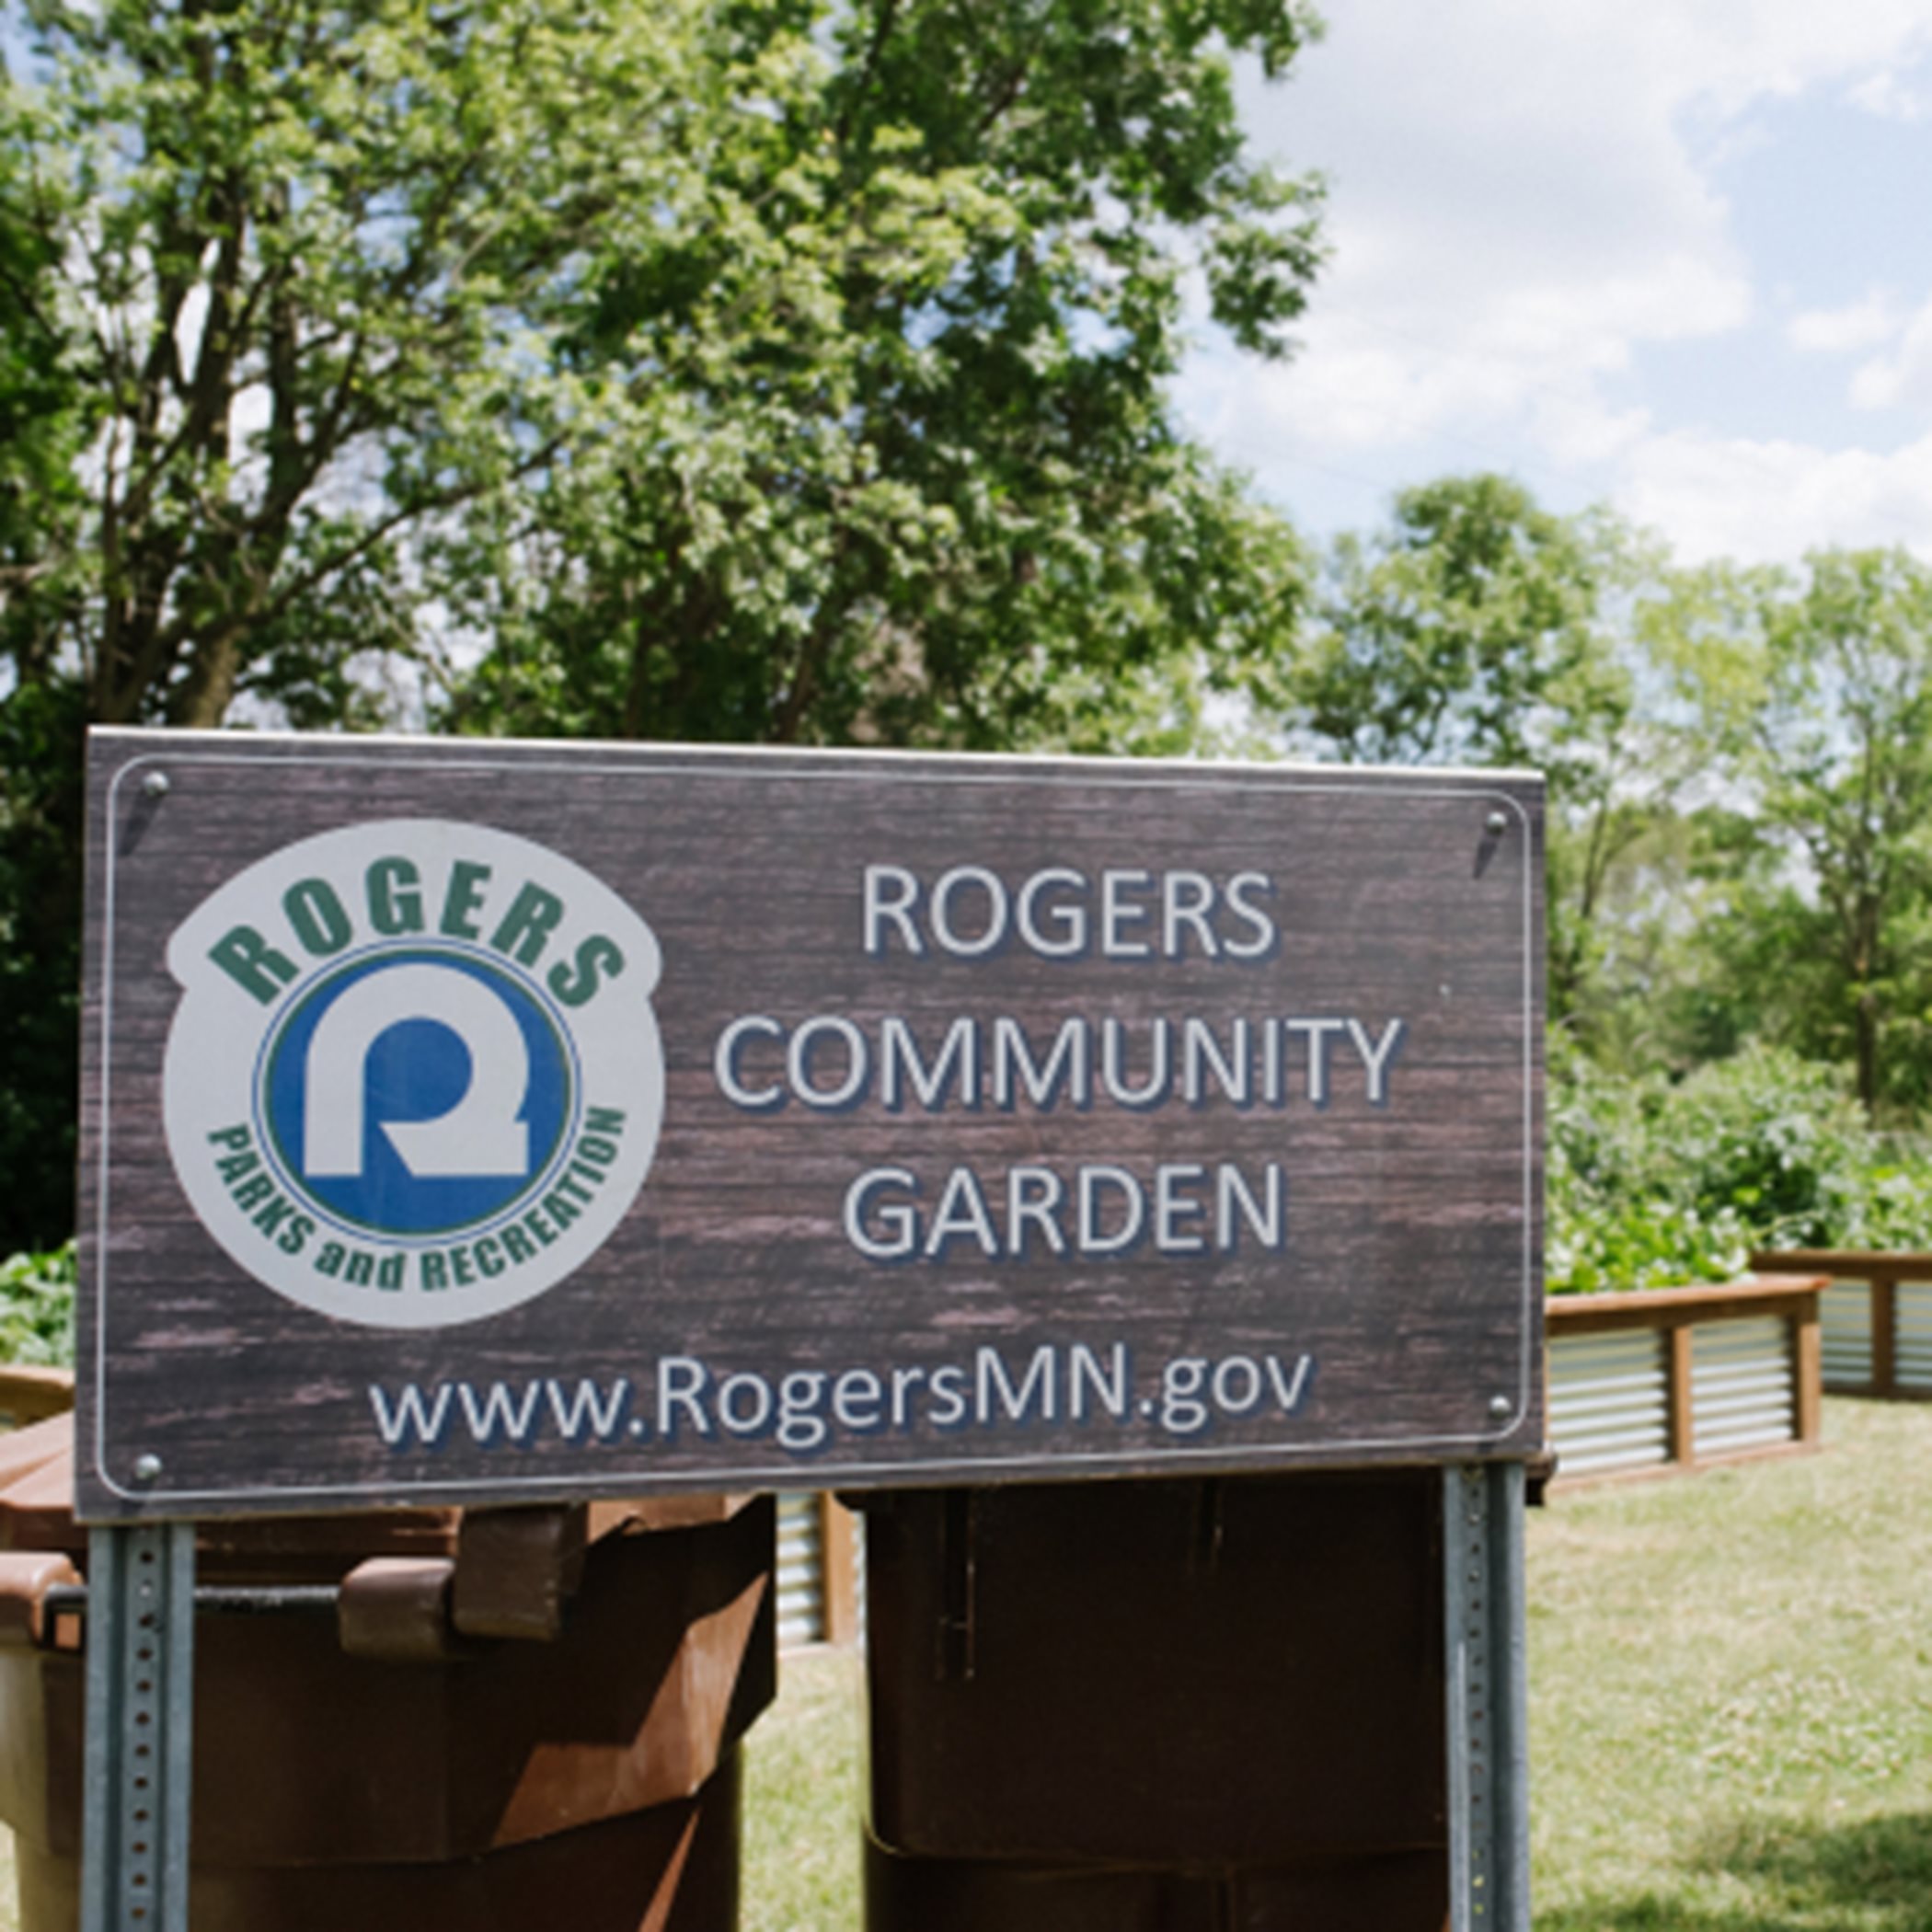 Rogers community garden